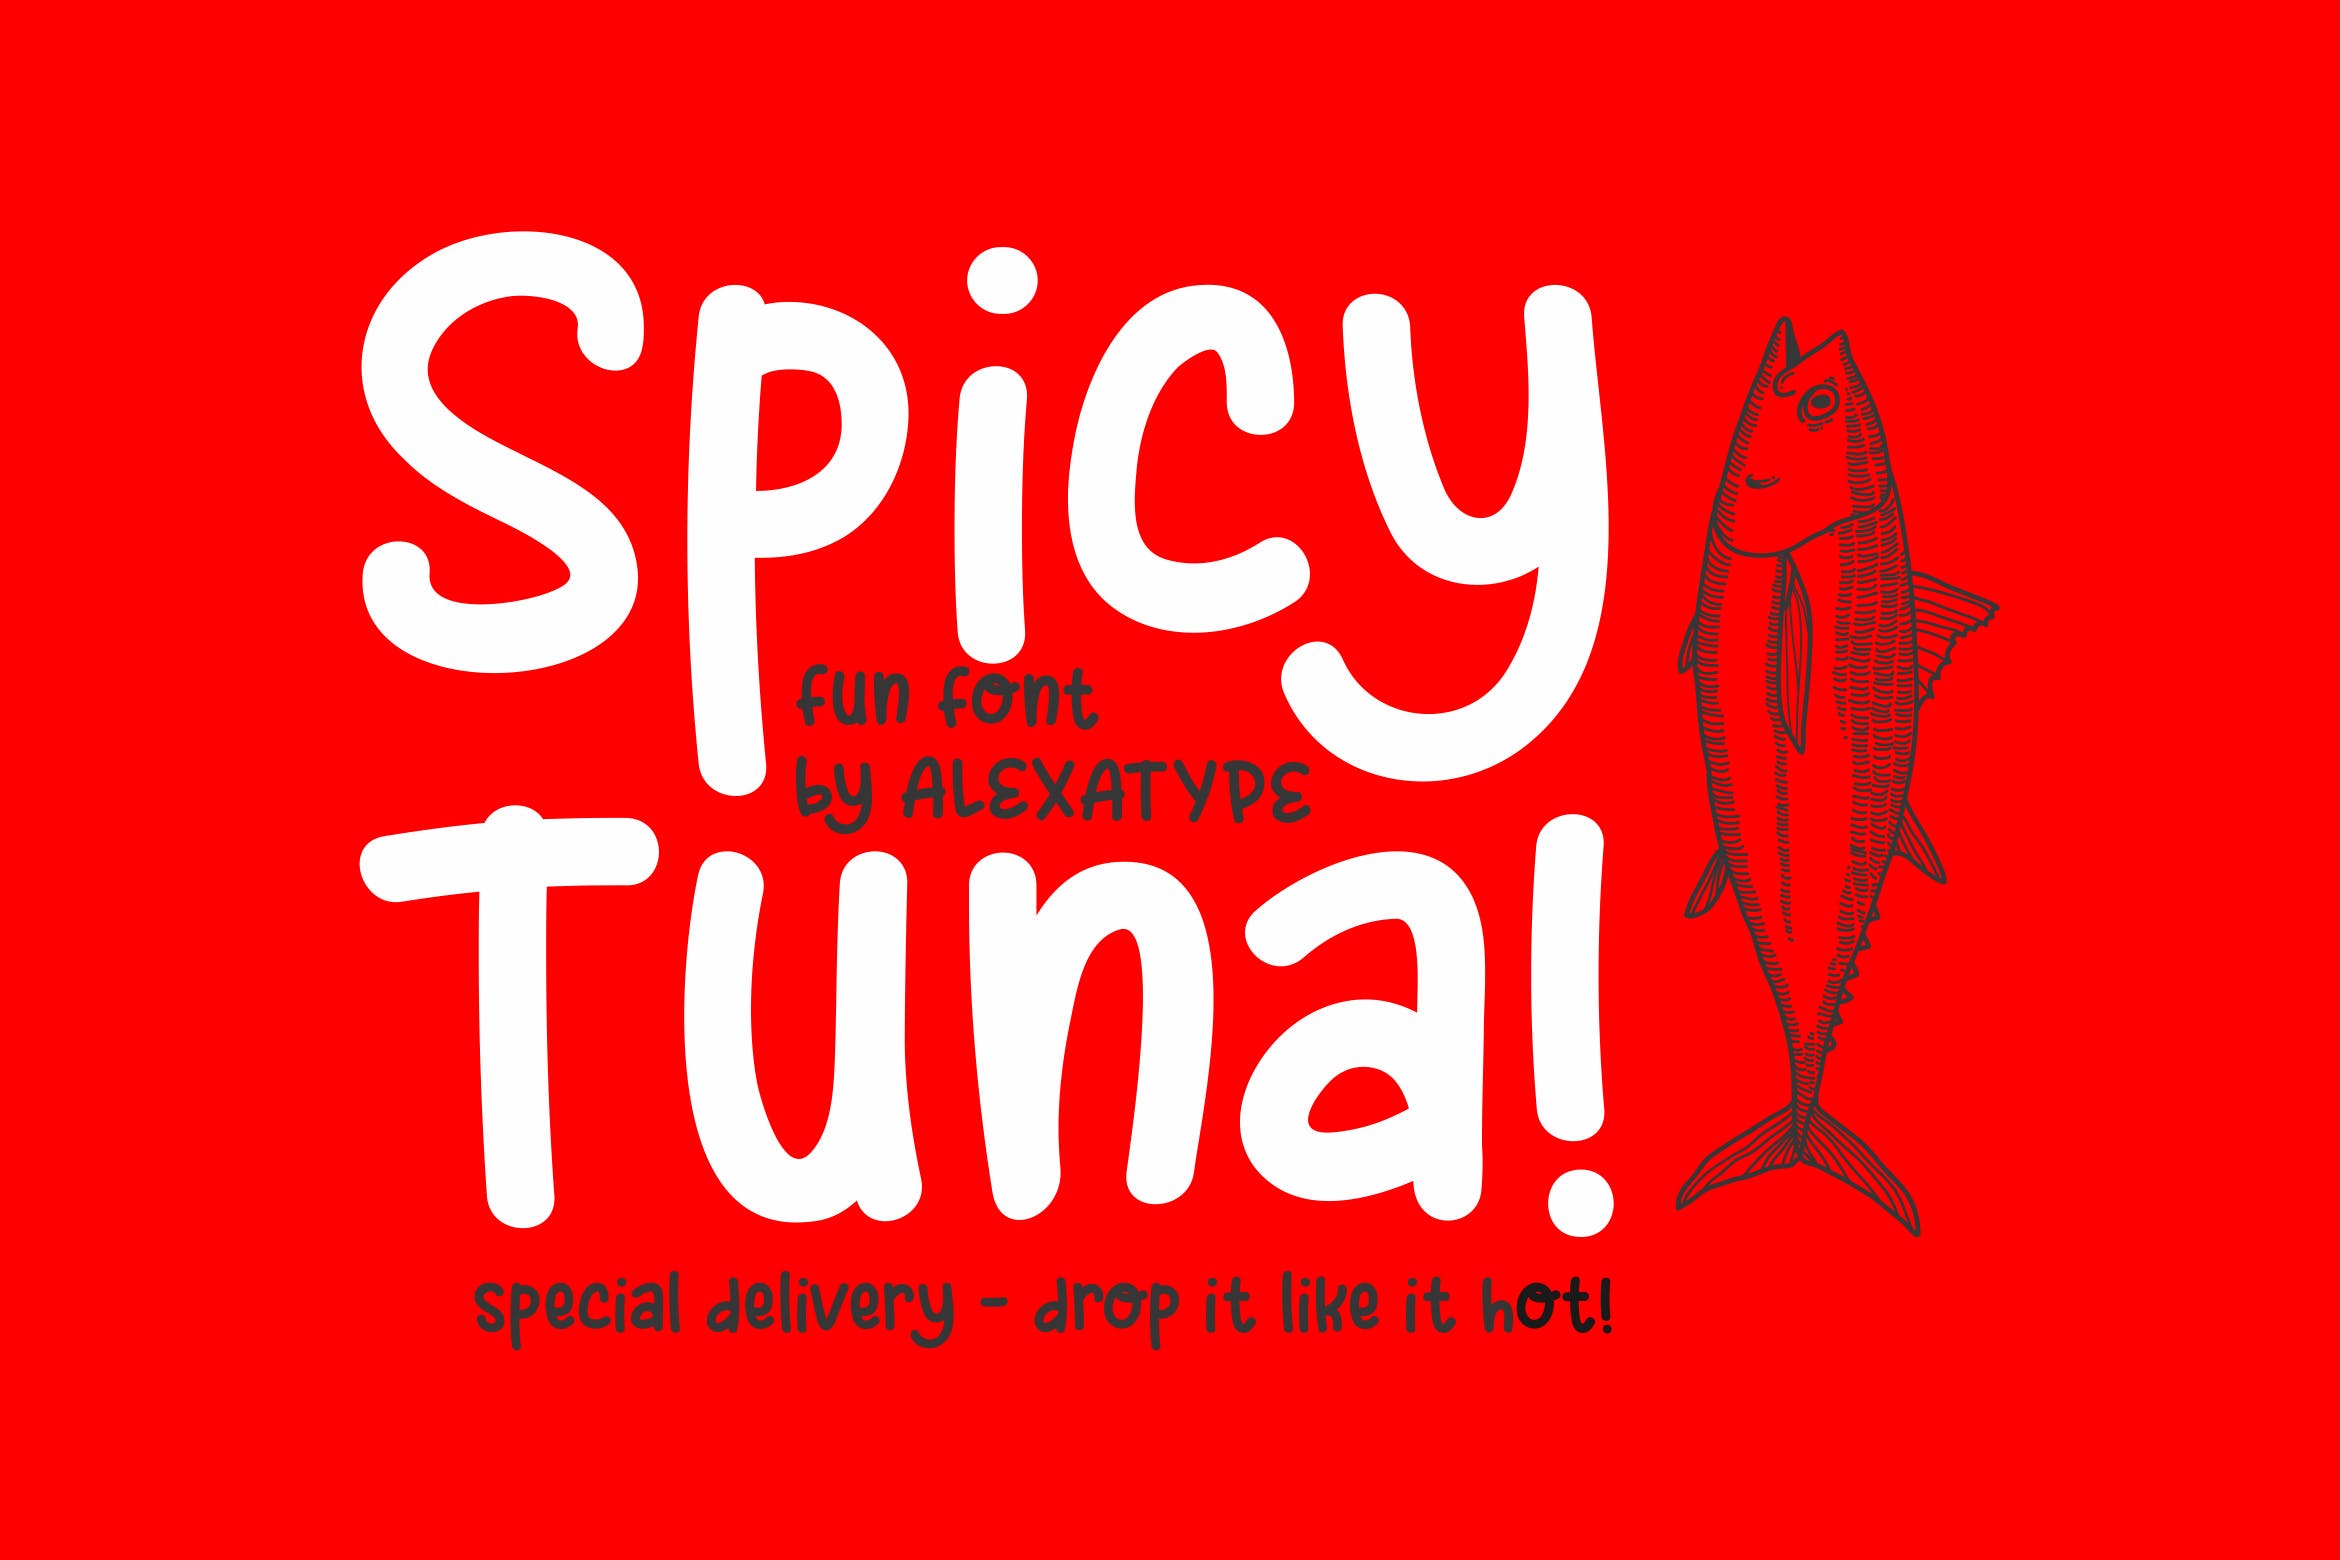 可爱风格英文儿童字体素材天下精选下载 Spicy Tuna – Fun Children Font插图